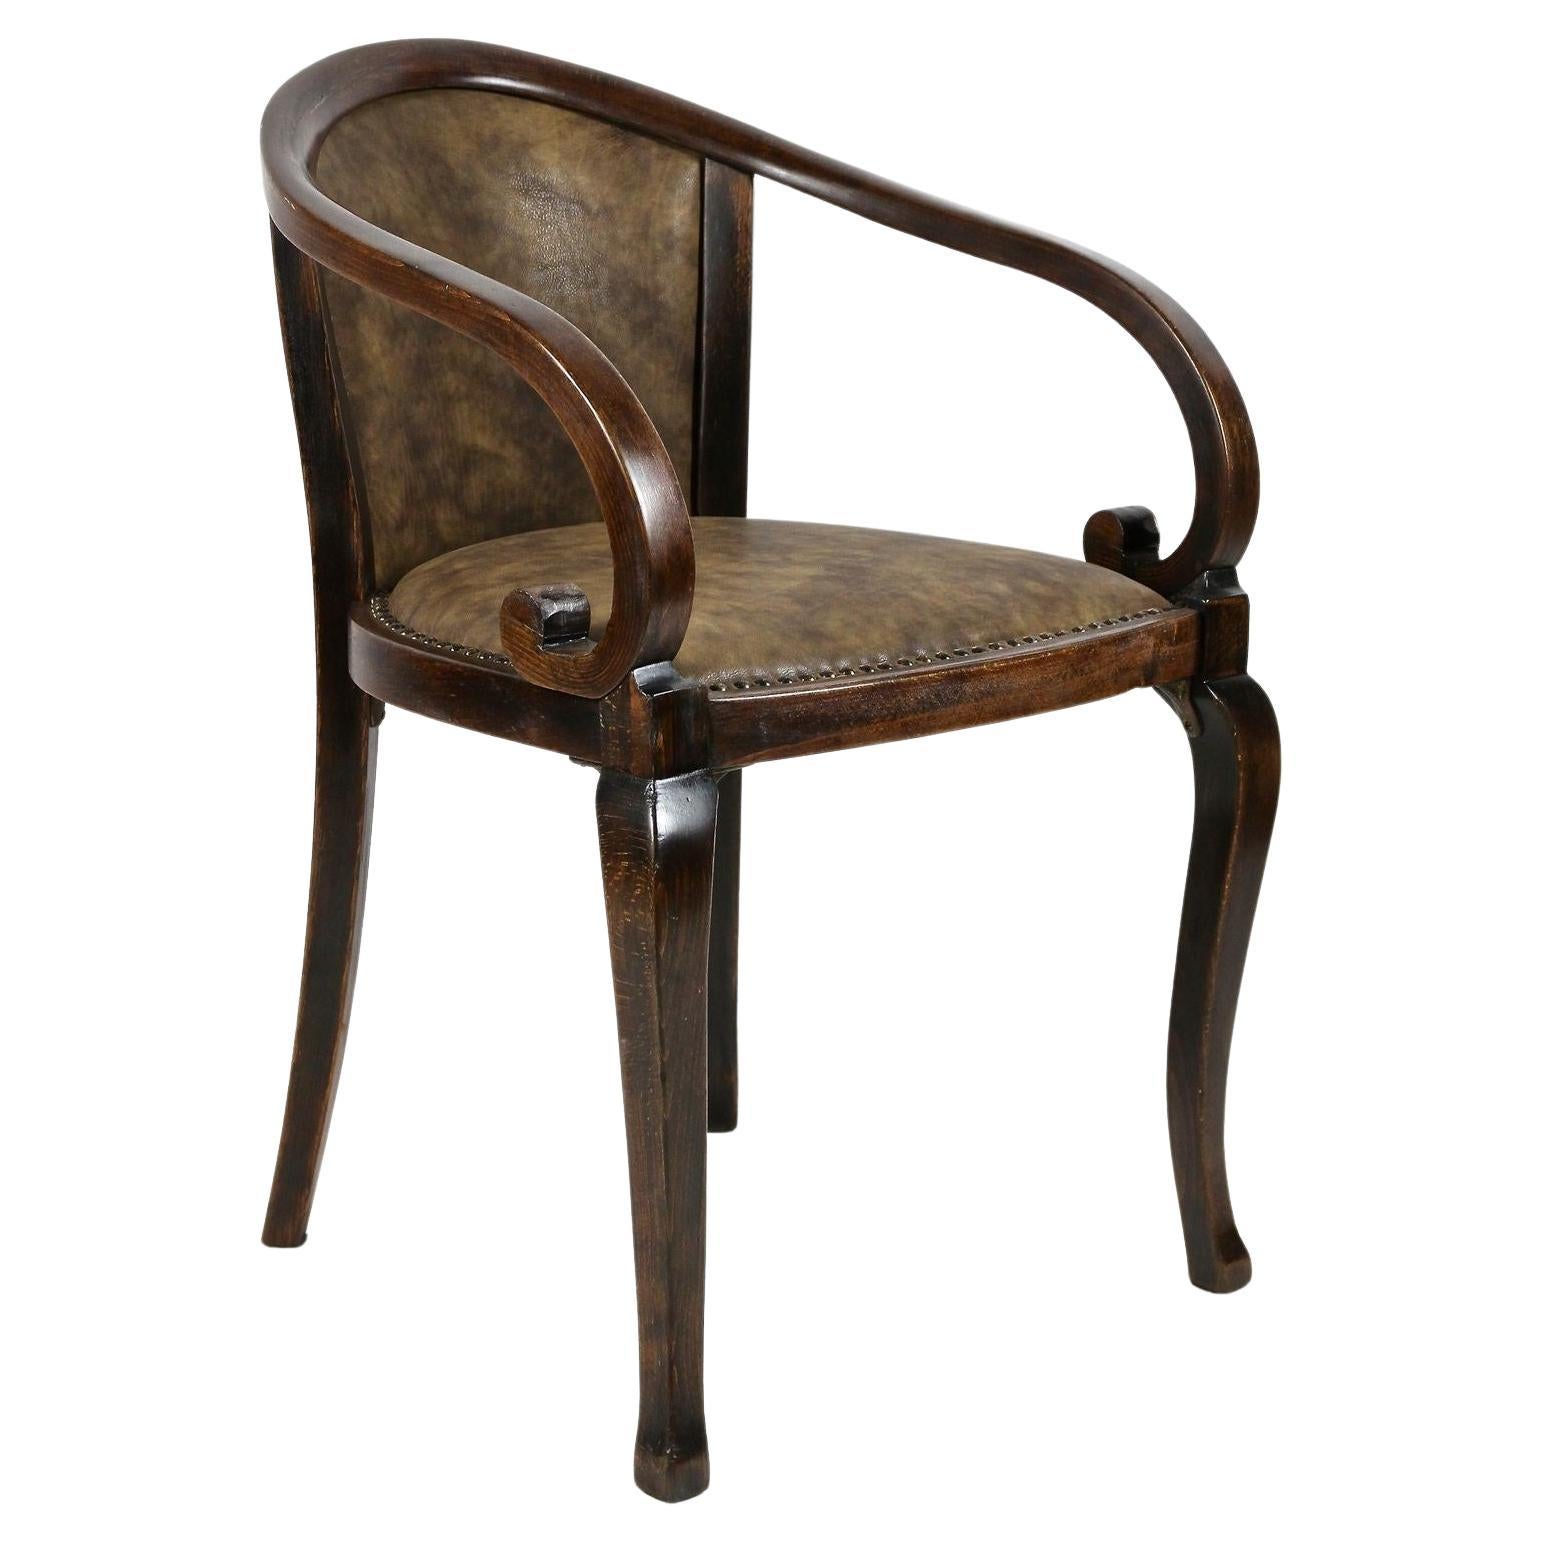 Jugendstil-Sessel aus Bugholz von Thonet – spätes 19. Jahrhundert, Österreich, um 1895